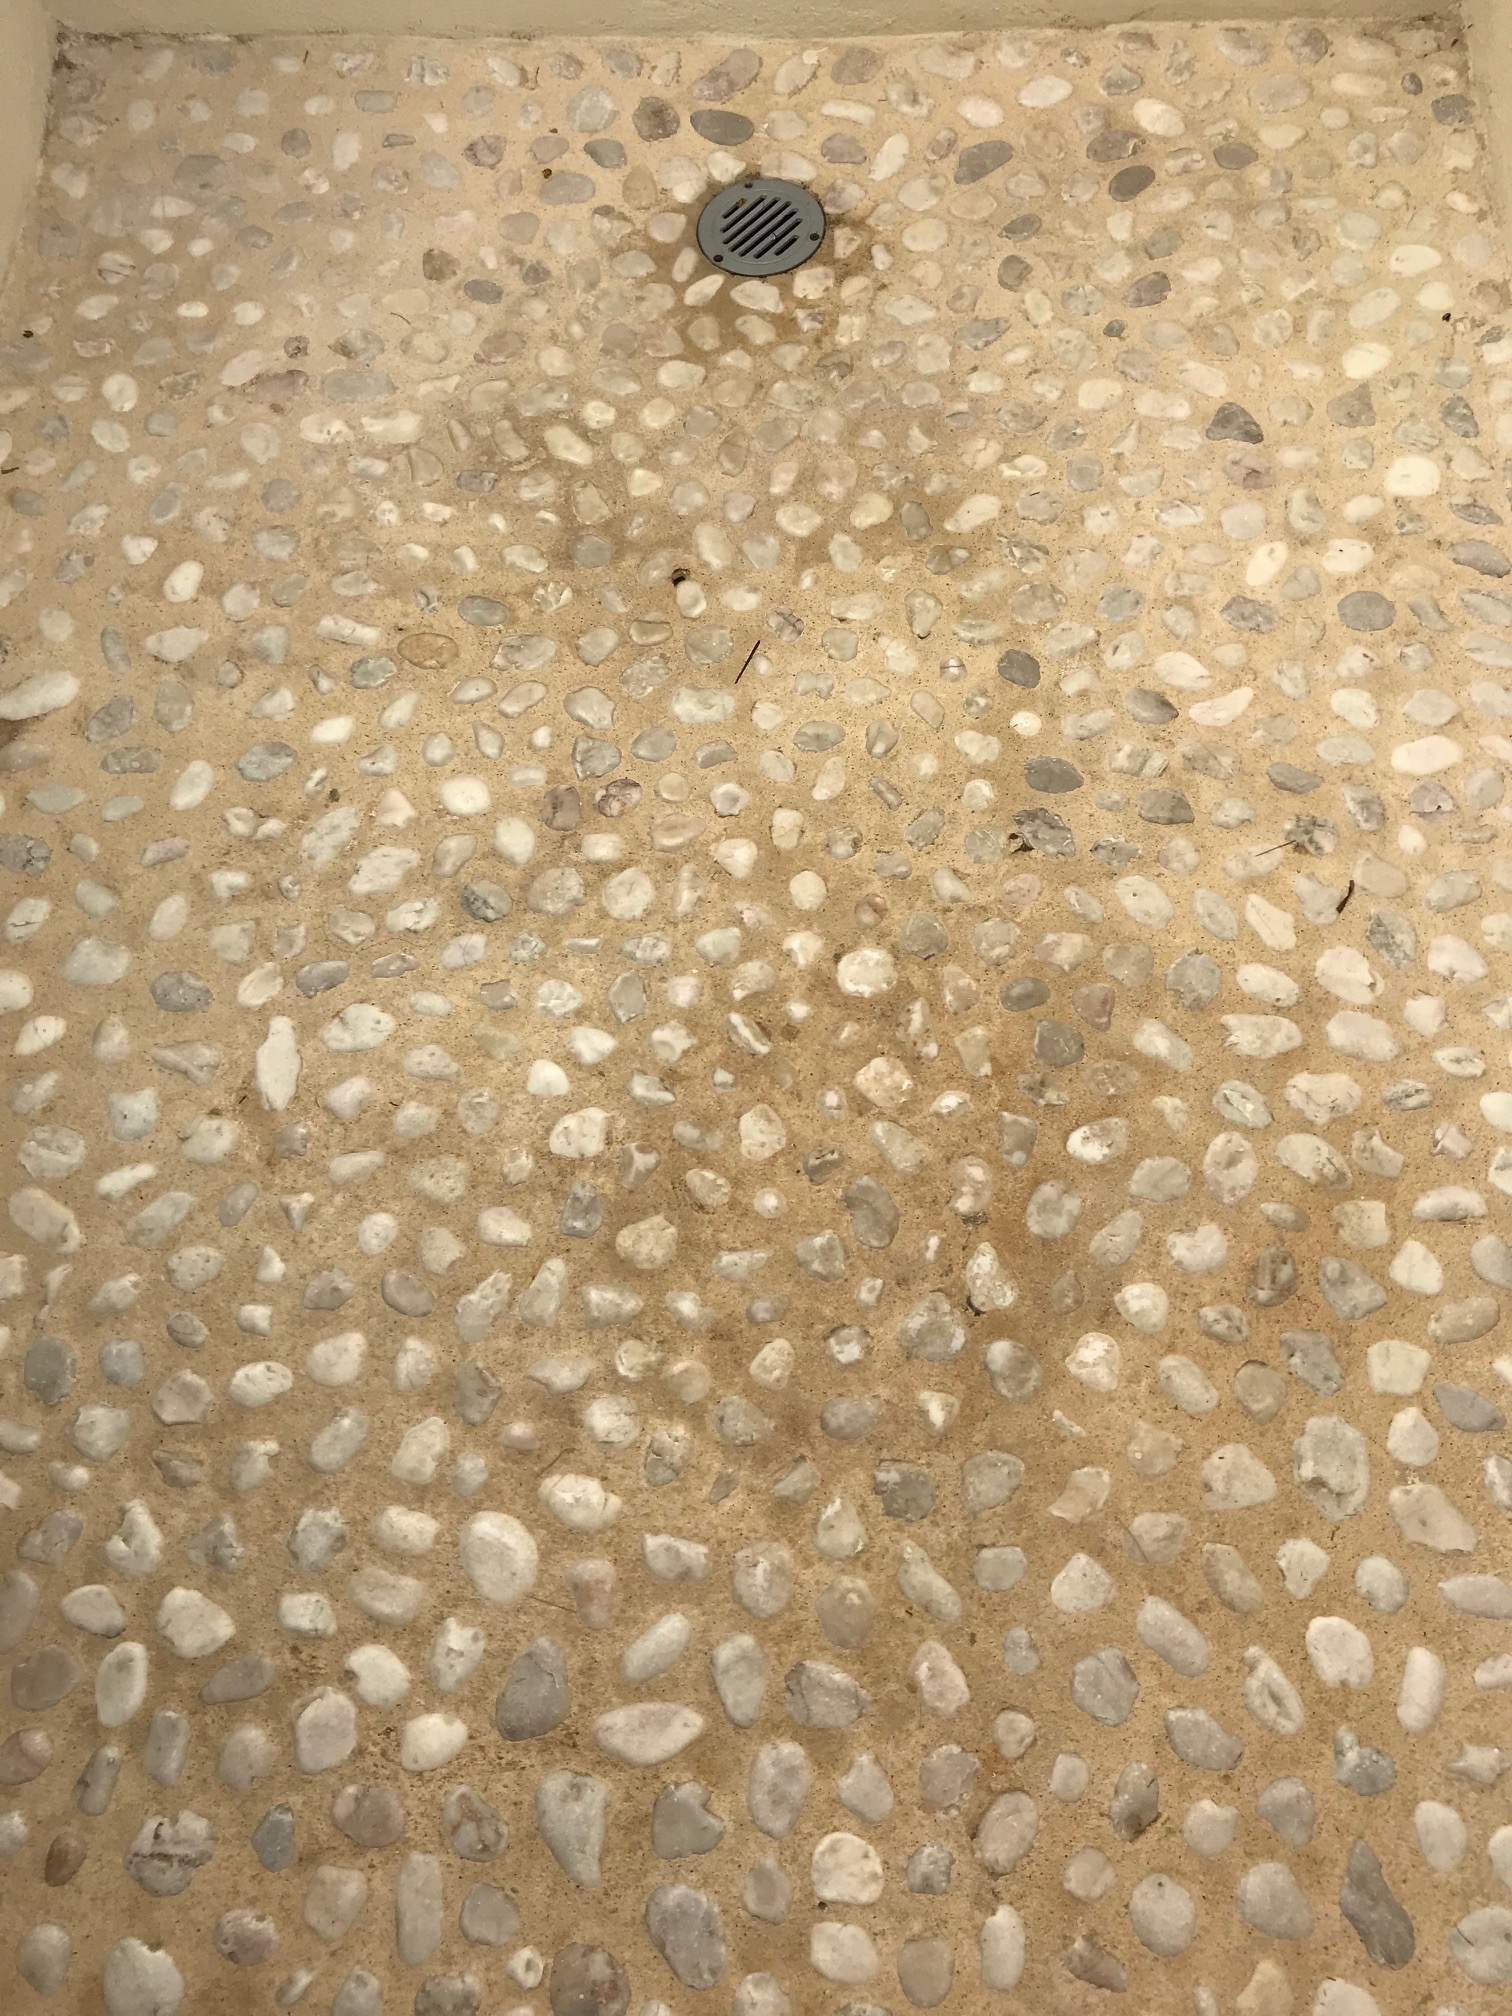 Pebbled Shower Floor, Mahekal Resort, Mexico